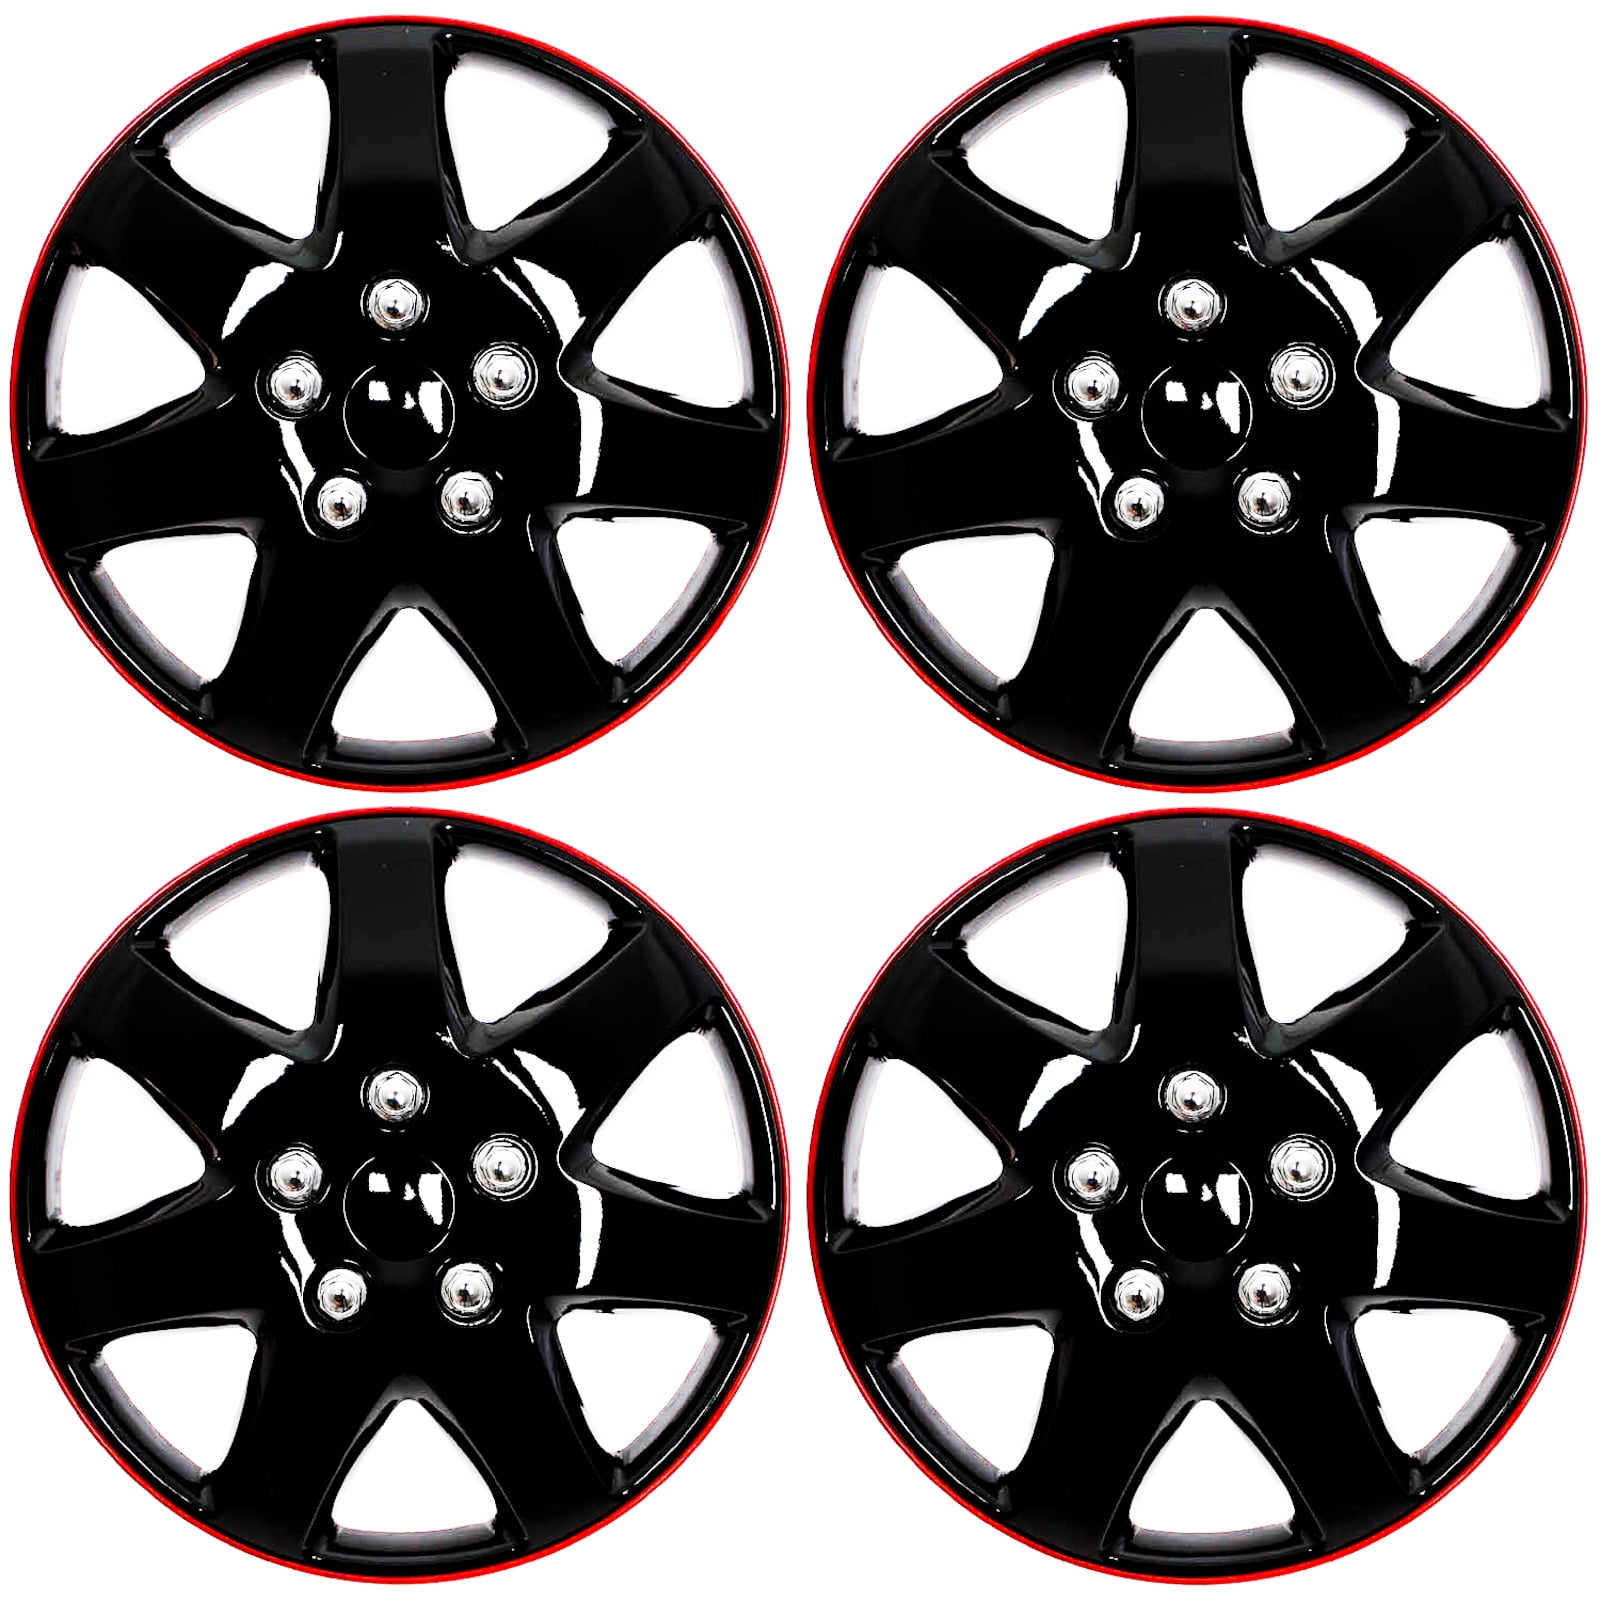 Covers Cap 4 Pc Set of 16" Matte Black Hub Caps Rim Cover for OEM Steel Wheel 